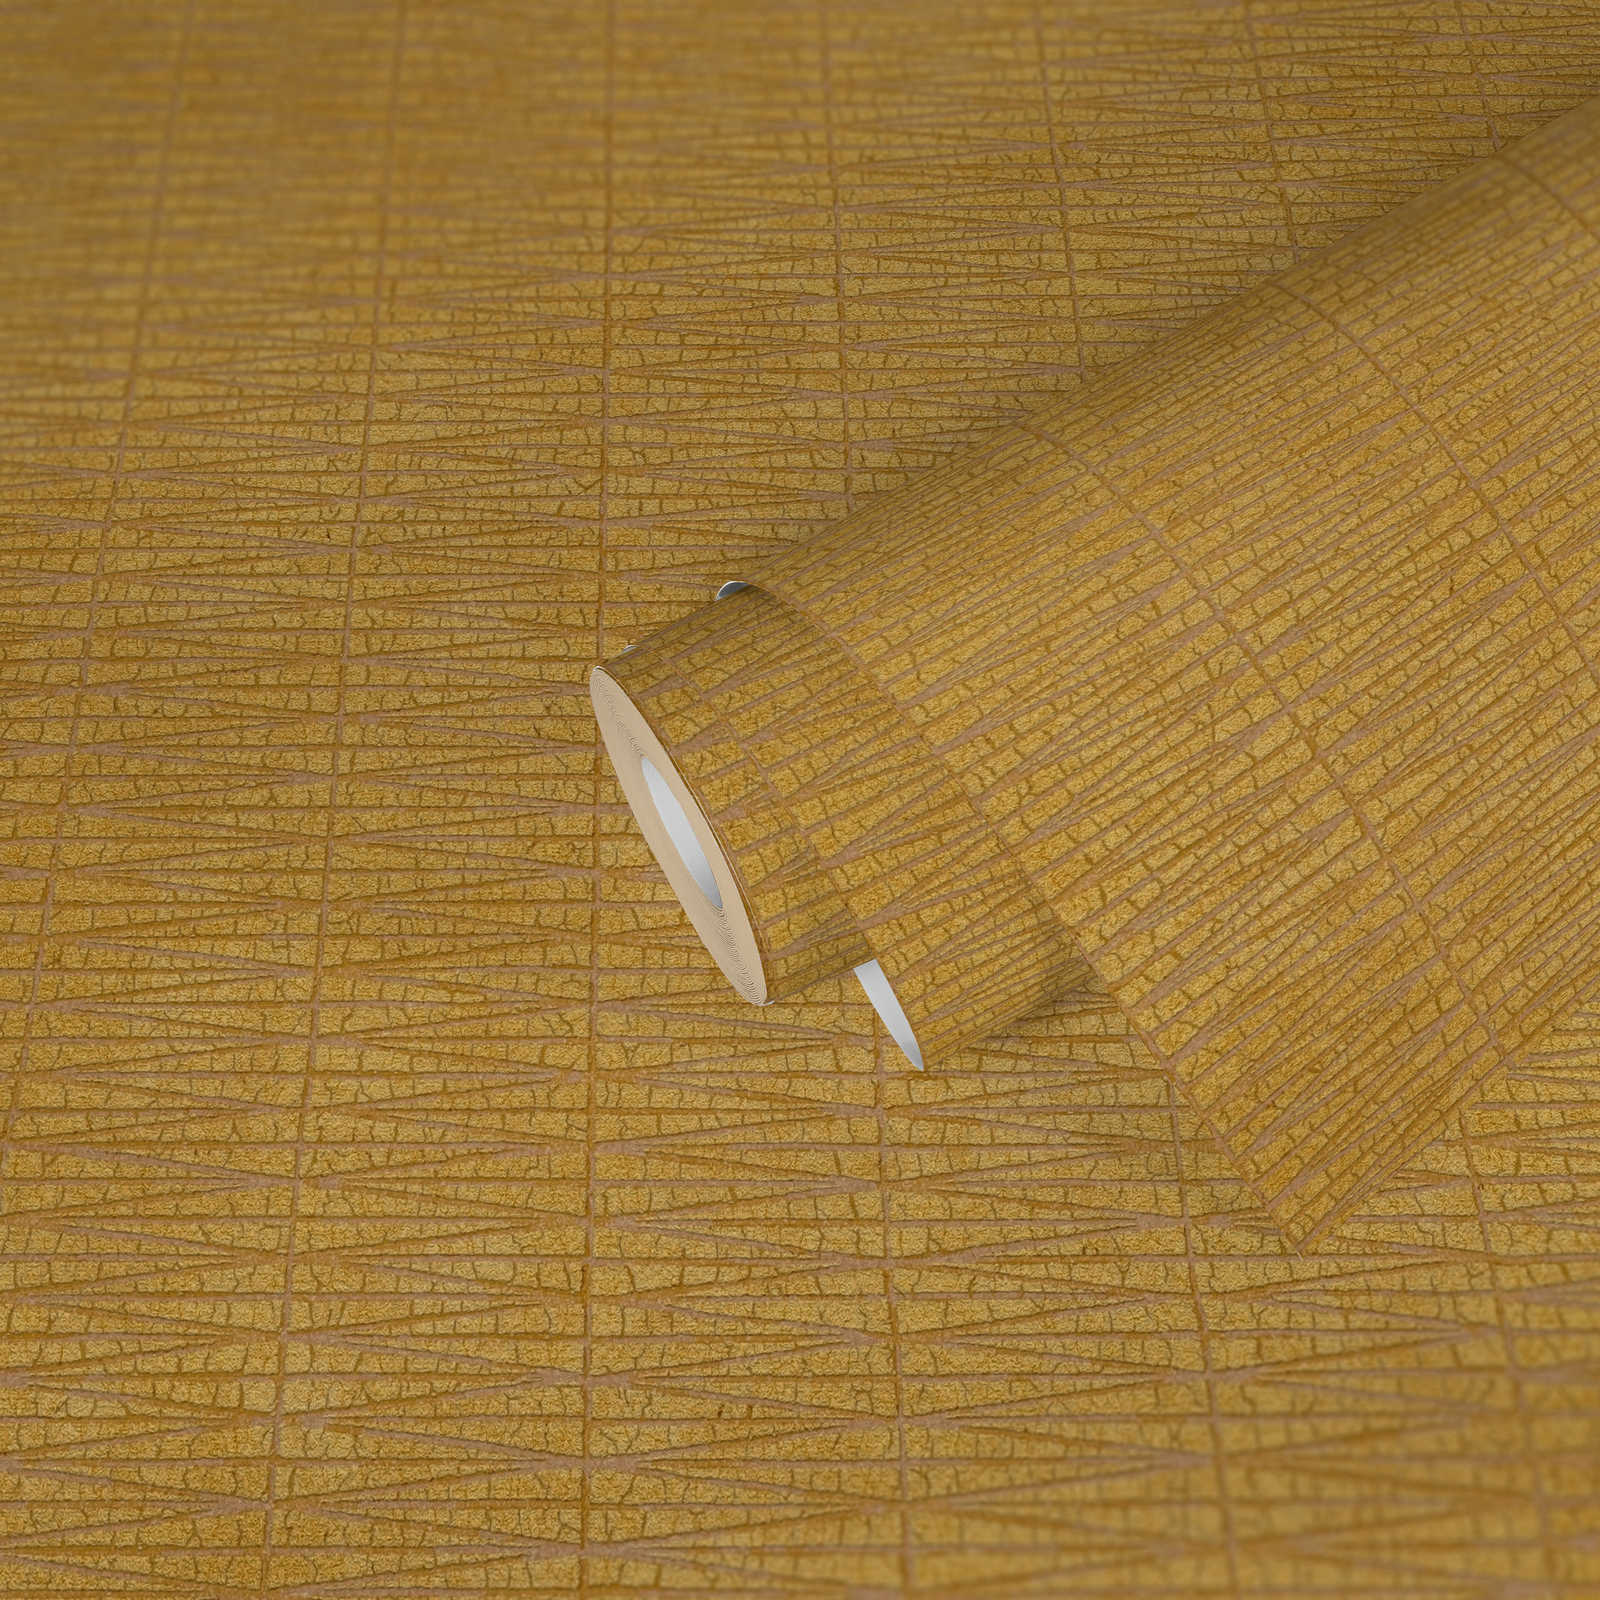             Mosterdgeel behang met natuurlijk structuurpatroon - Geel, Metallic
        